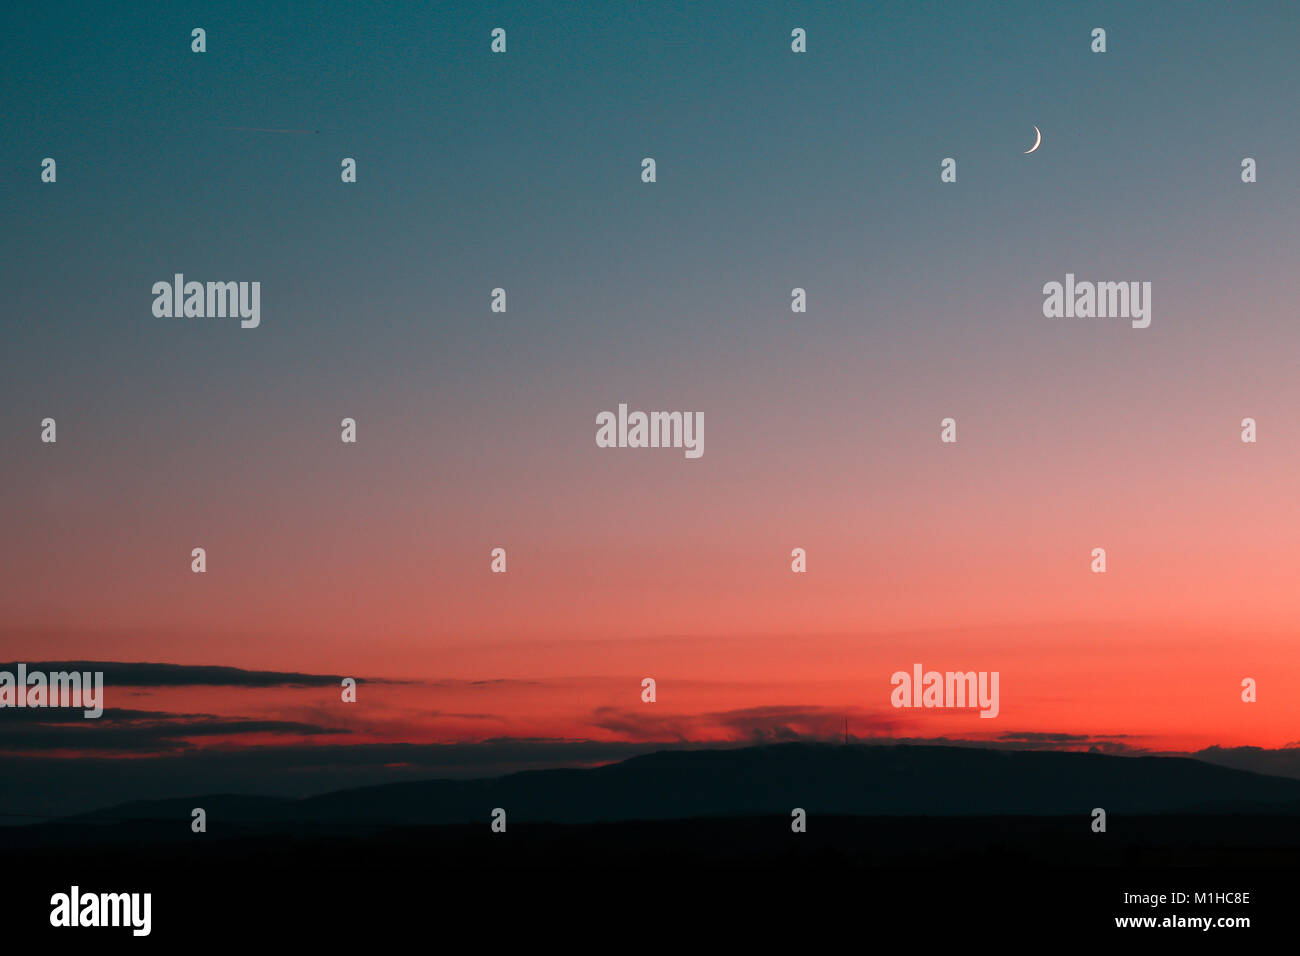 Una visione minimalista dal tramonto colorato. Le diverse sfumature di rosa e blu con la piccola Luna in alto nel cielo. Foto Stock